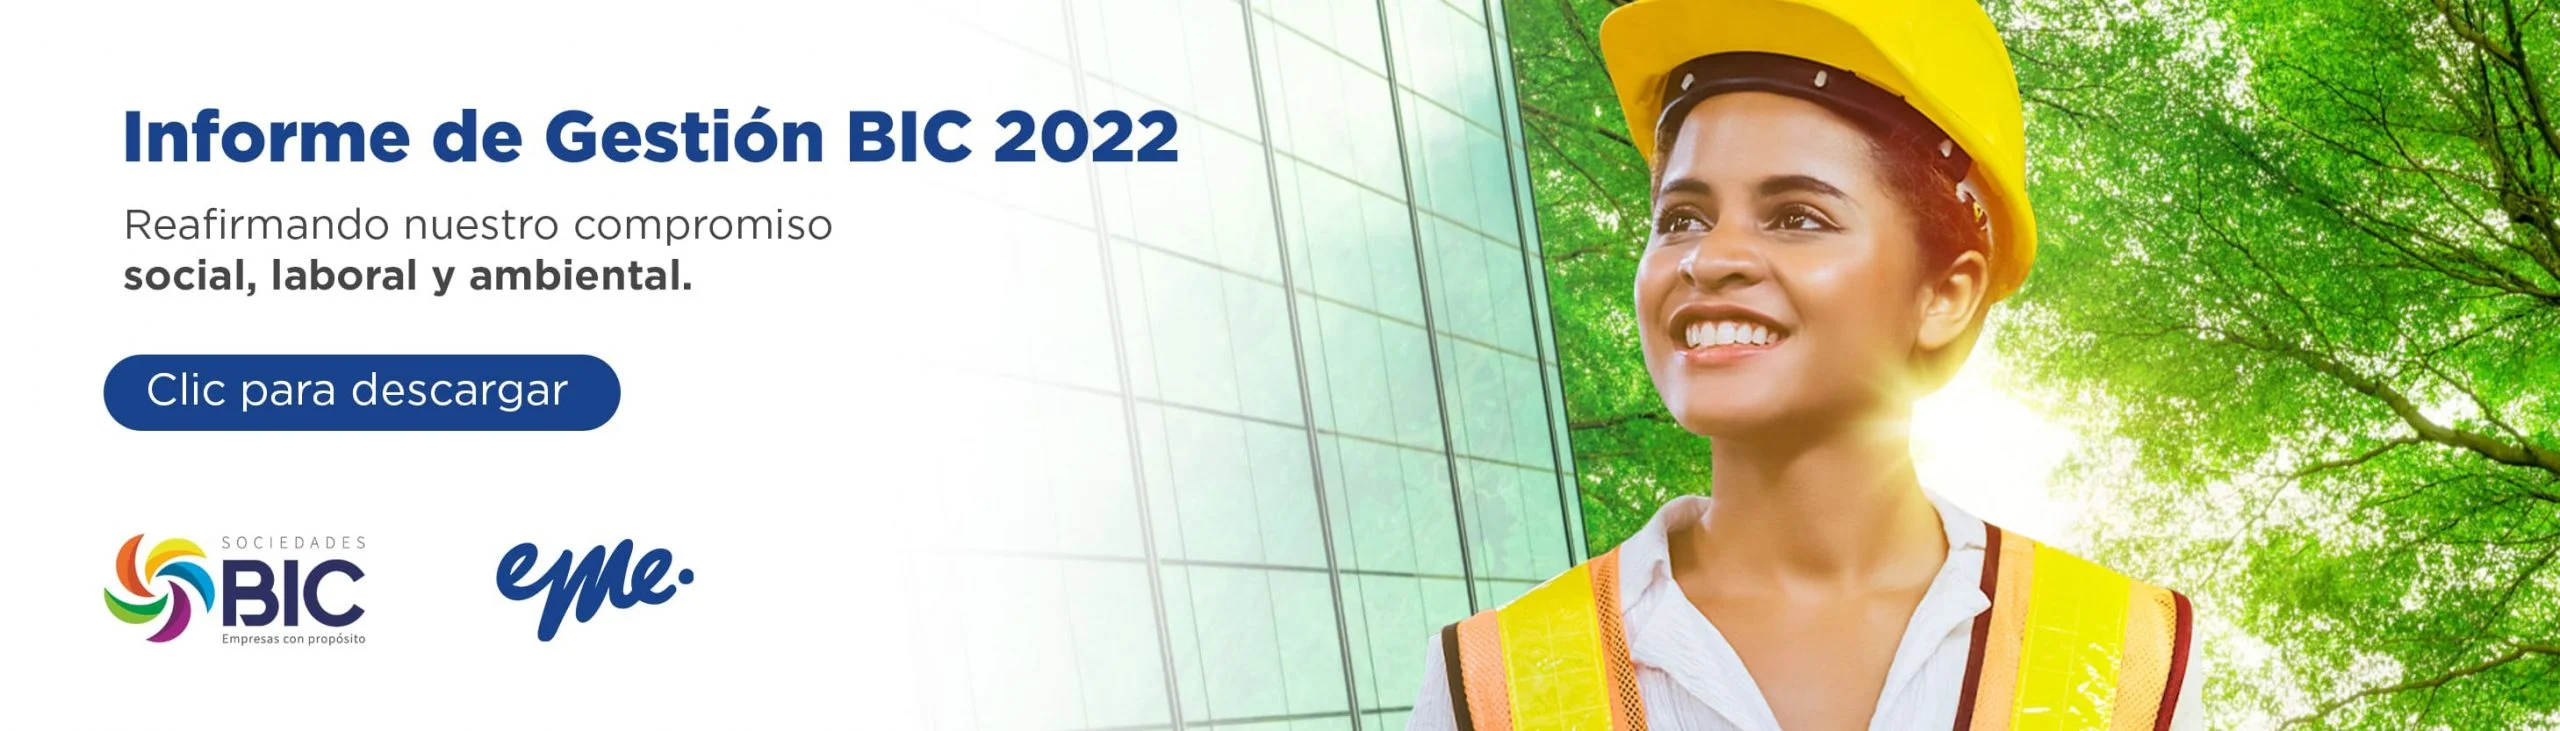 Informe de gestión BIC 2021